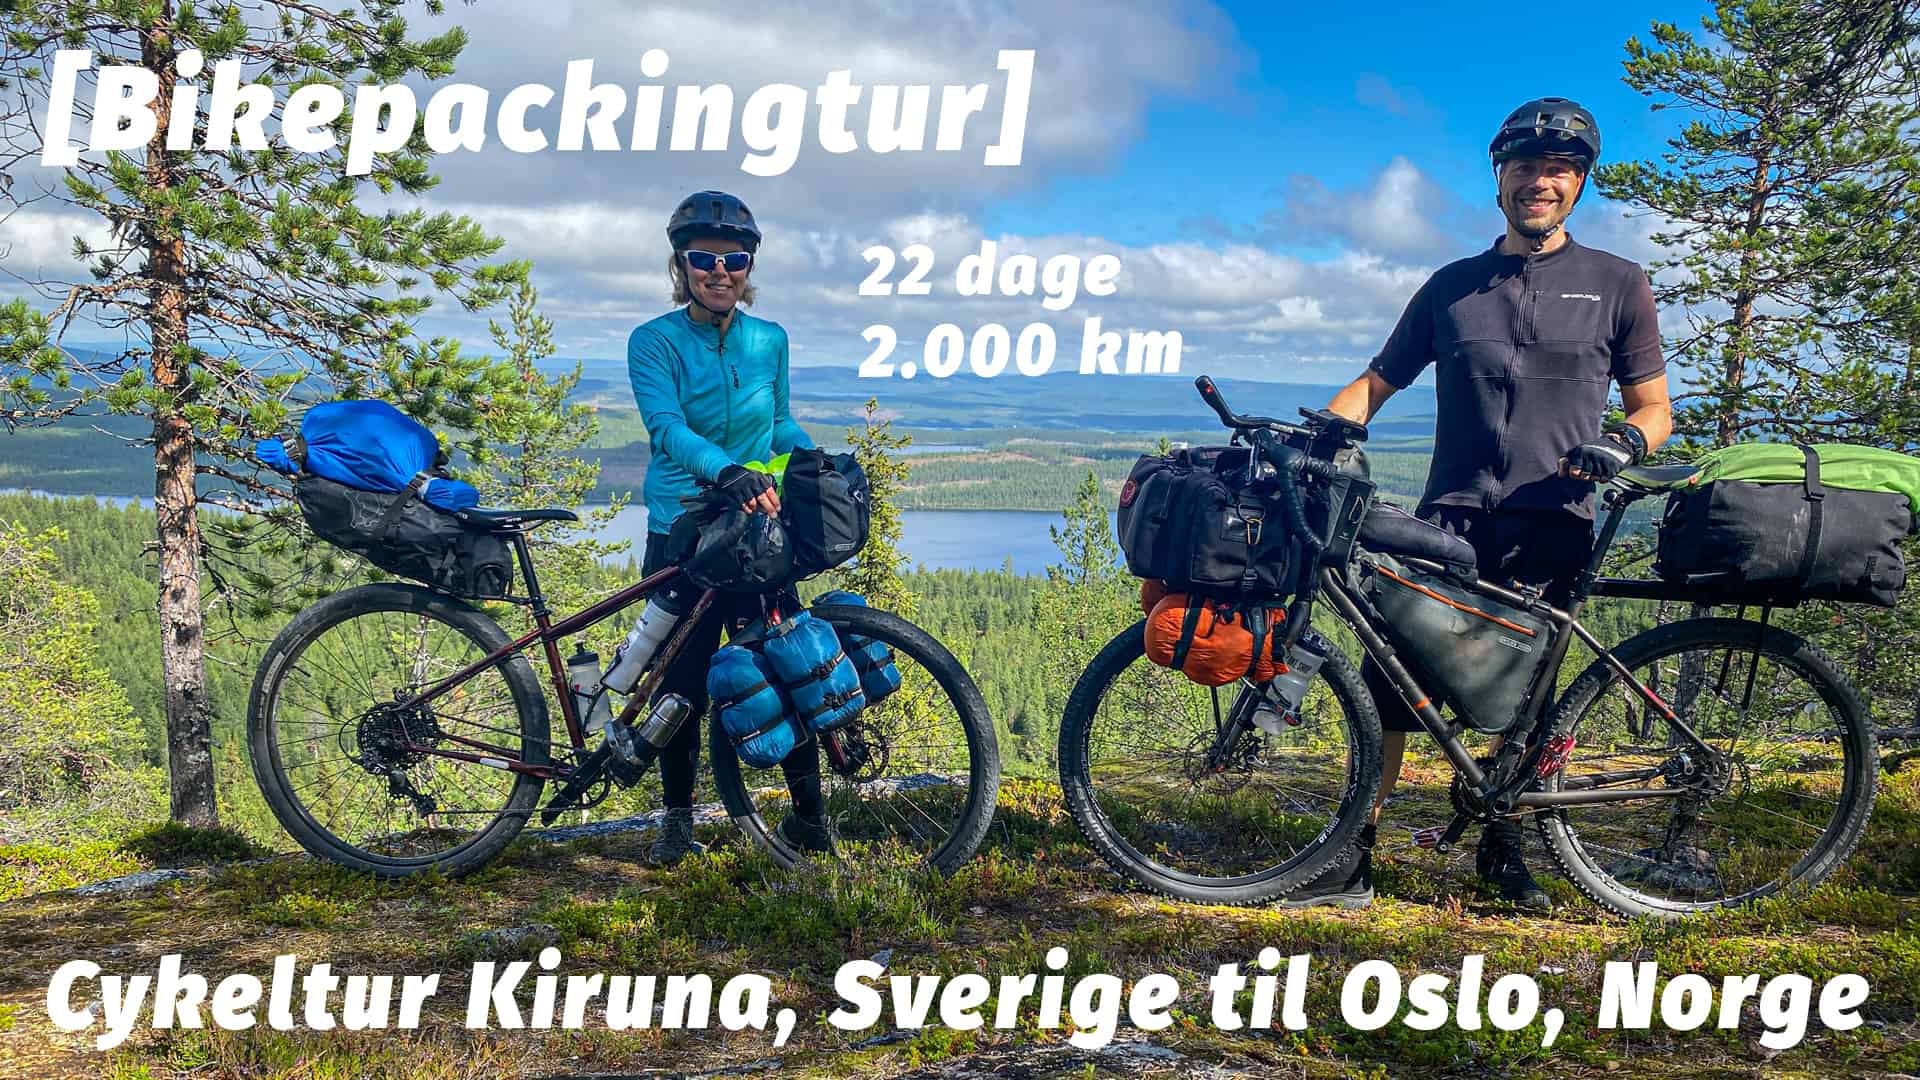 Cykeltur Kiruna, Sverige til Oslo, Norge [Bikepackingtur] med eventyrer Erik B. Jørgensen